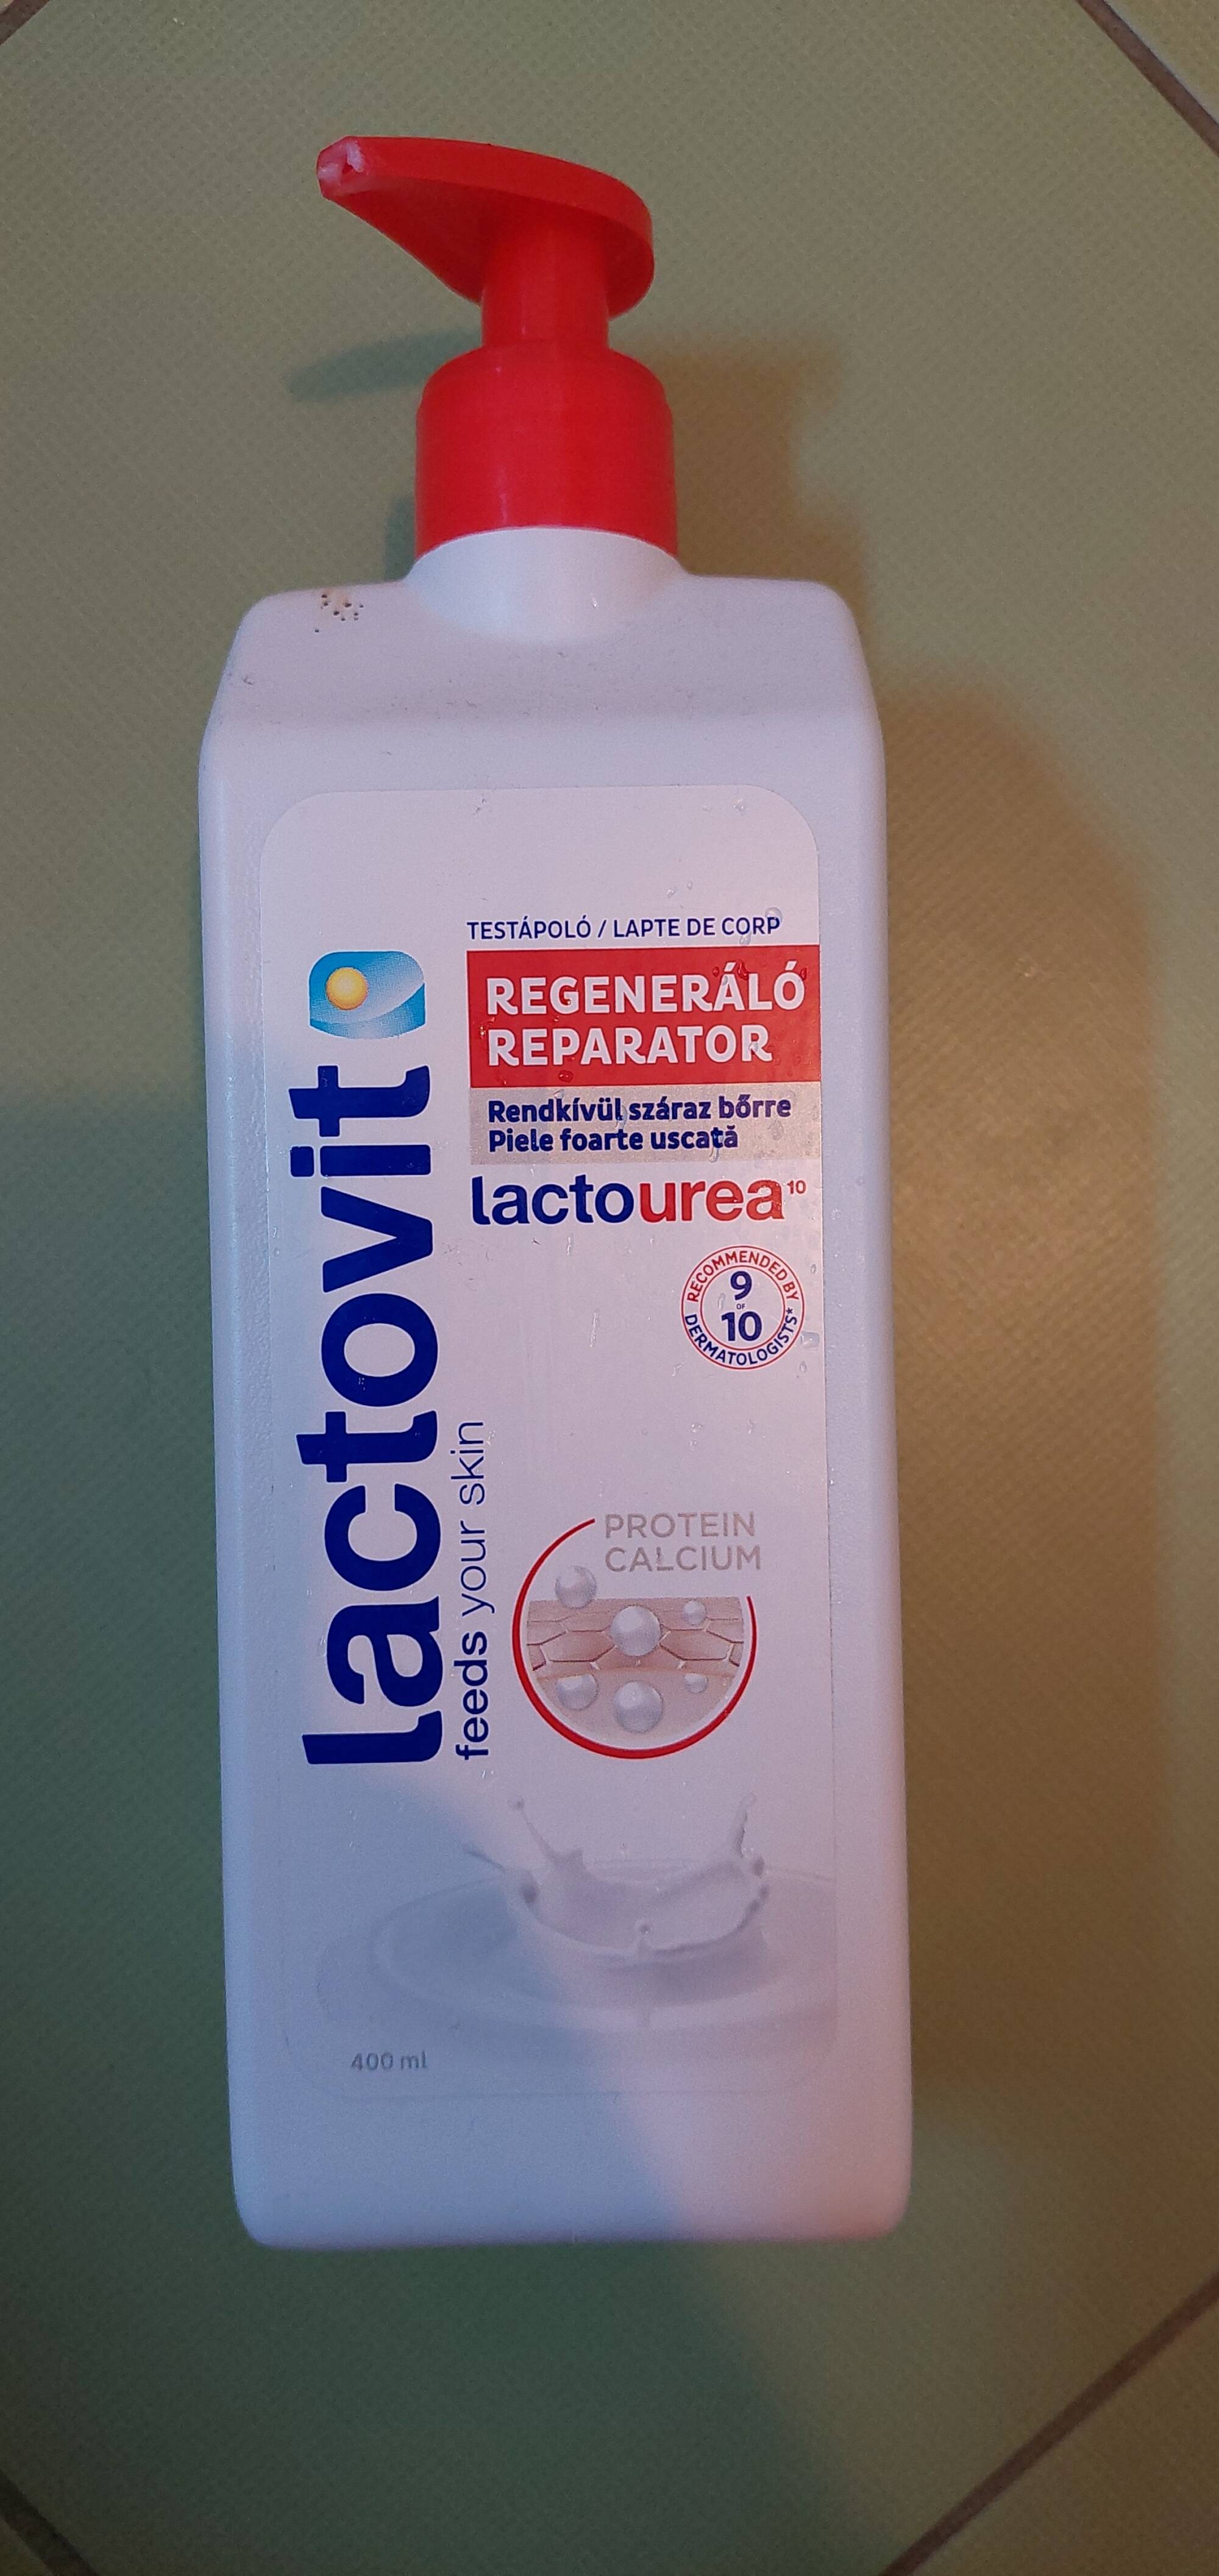 LACTOVIT - Lactourea Regeneralo reparator lapte de corp